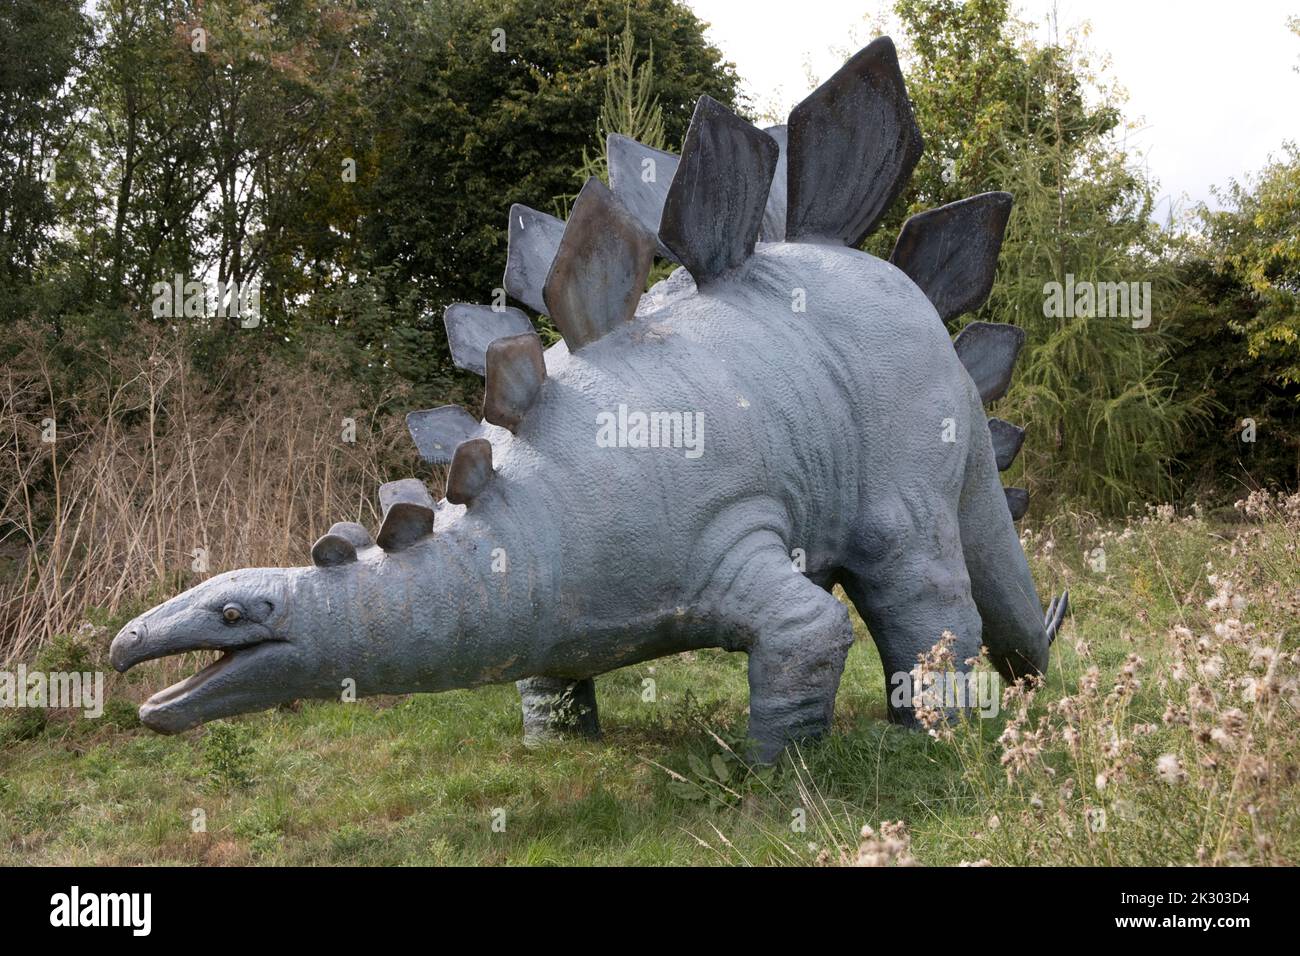 Modello LifeSize di Stegosaurus un dinosauro erbivoro, a quattro zampe, corazzato del tardo Jurassicd, All Things Wild, Honeybourne, UK Foto Stock